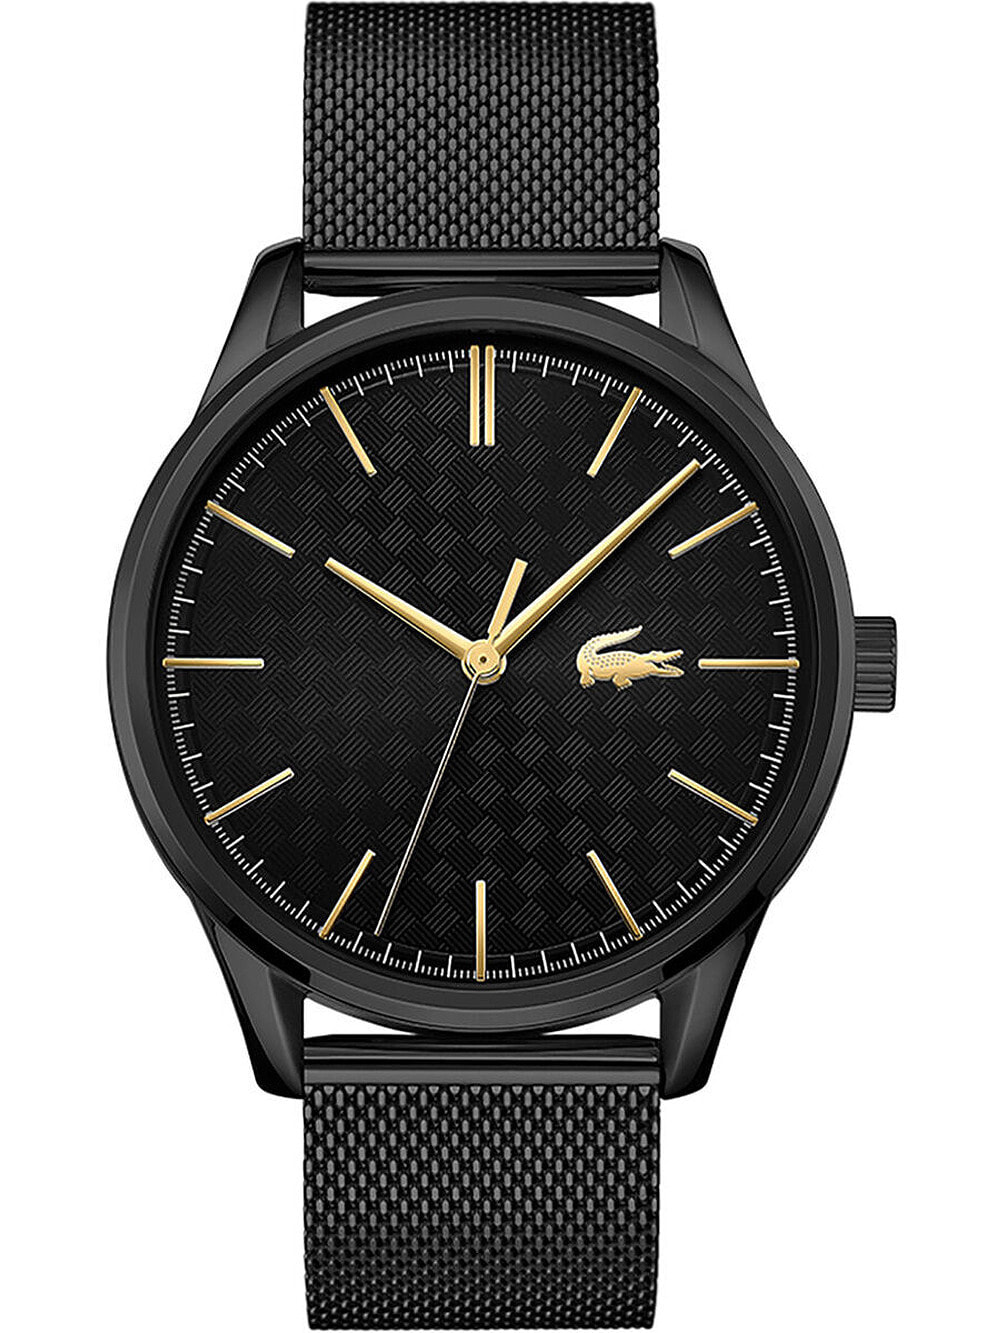 Мужские наручные часы с черным браслетом Lacoste 2011105 Vienna mens 42mm 5ATM